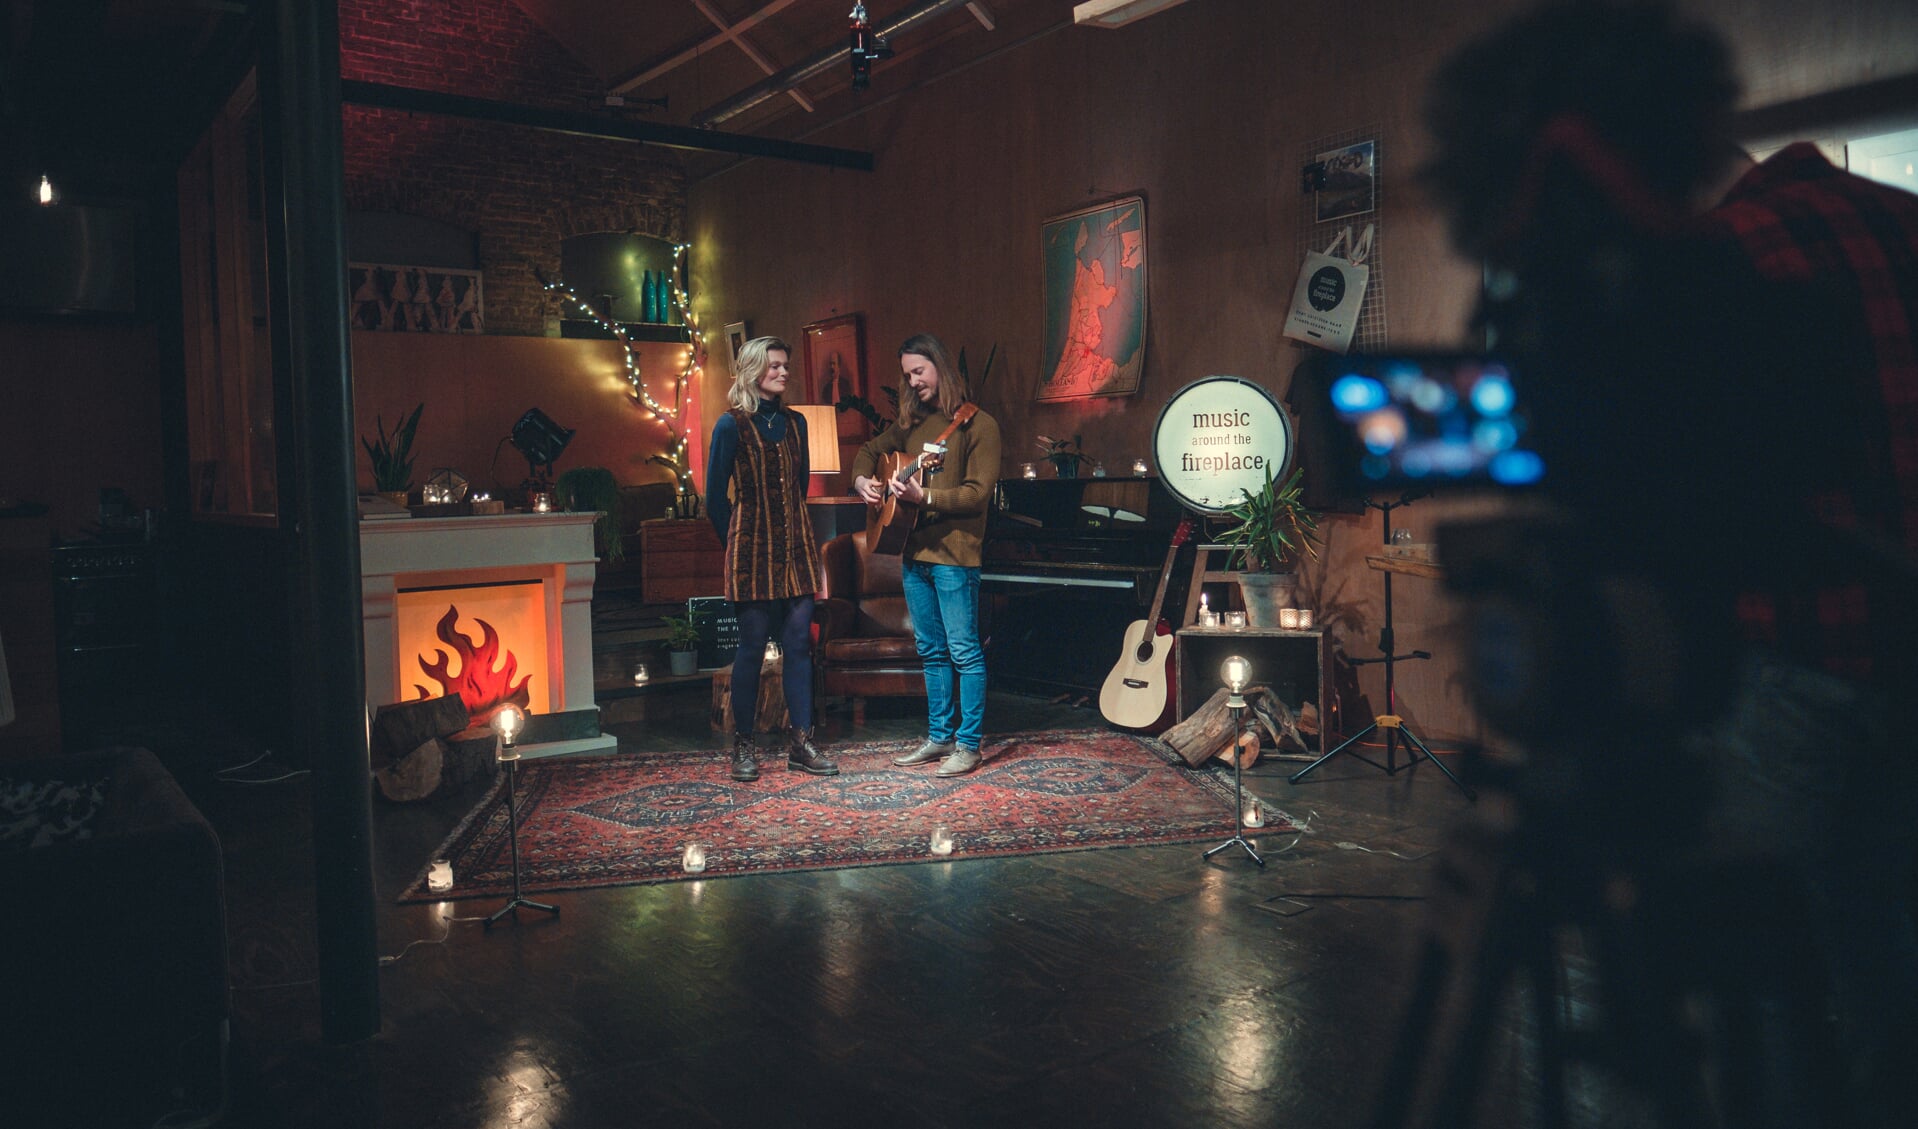 Scott & Young tijdens de opname van de Music Around The Fireplace Livestream Special in @AllArt in Hilversum.